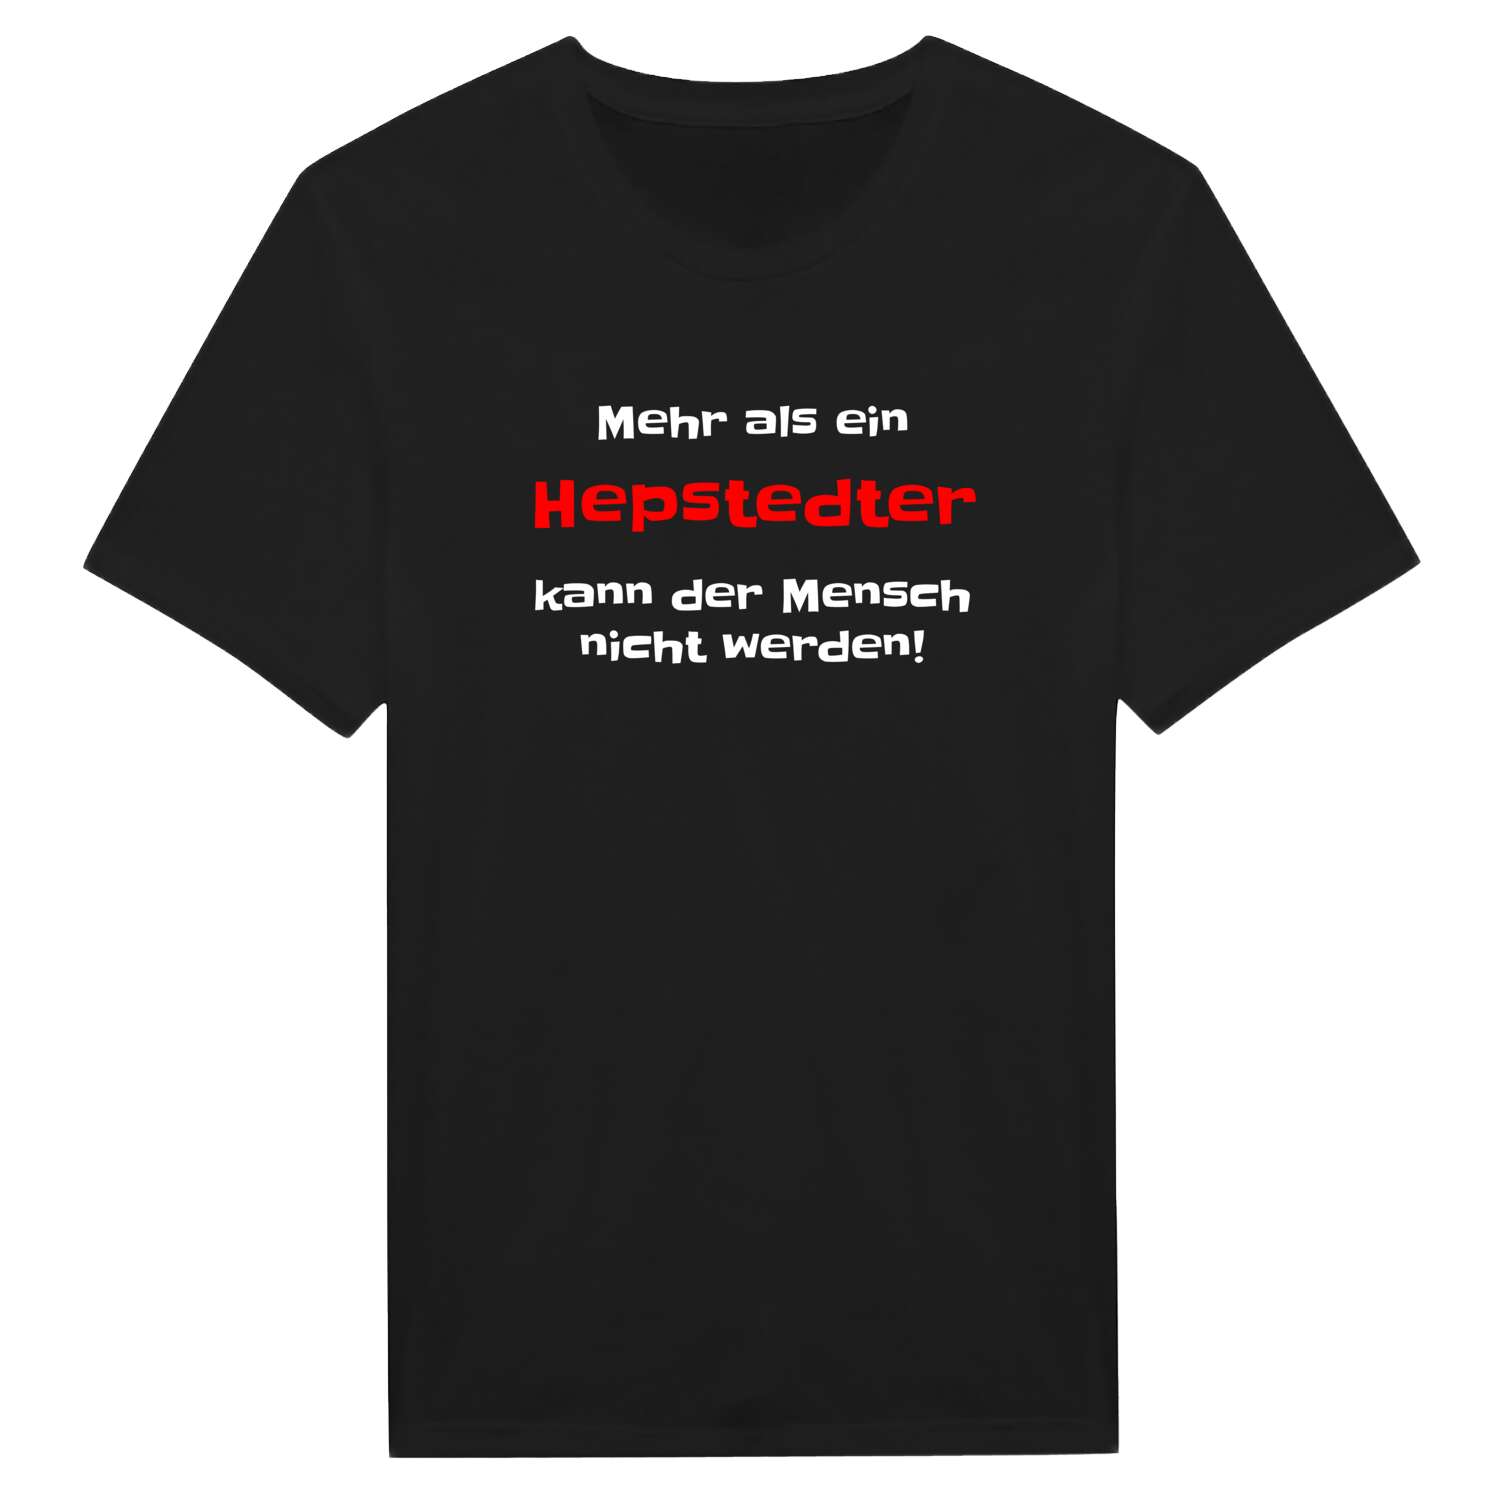 Hepstedt T-Shirt »Mehr als ein«